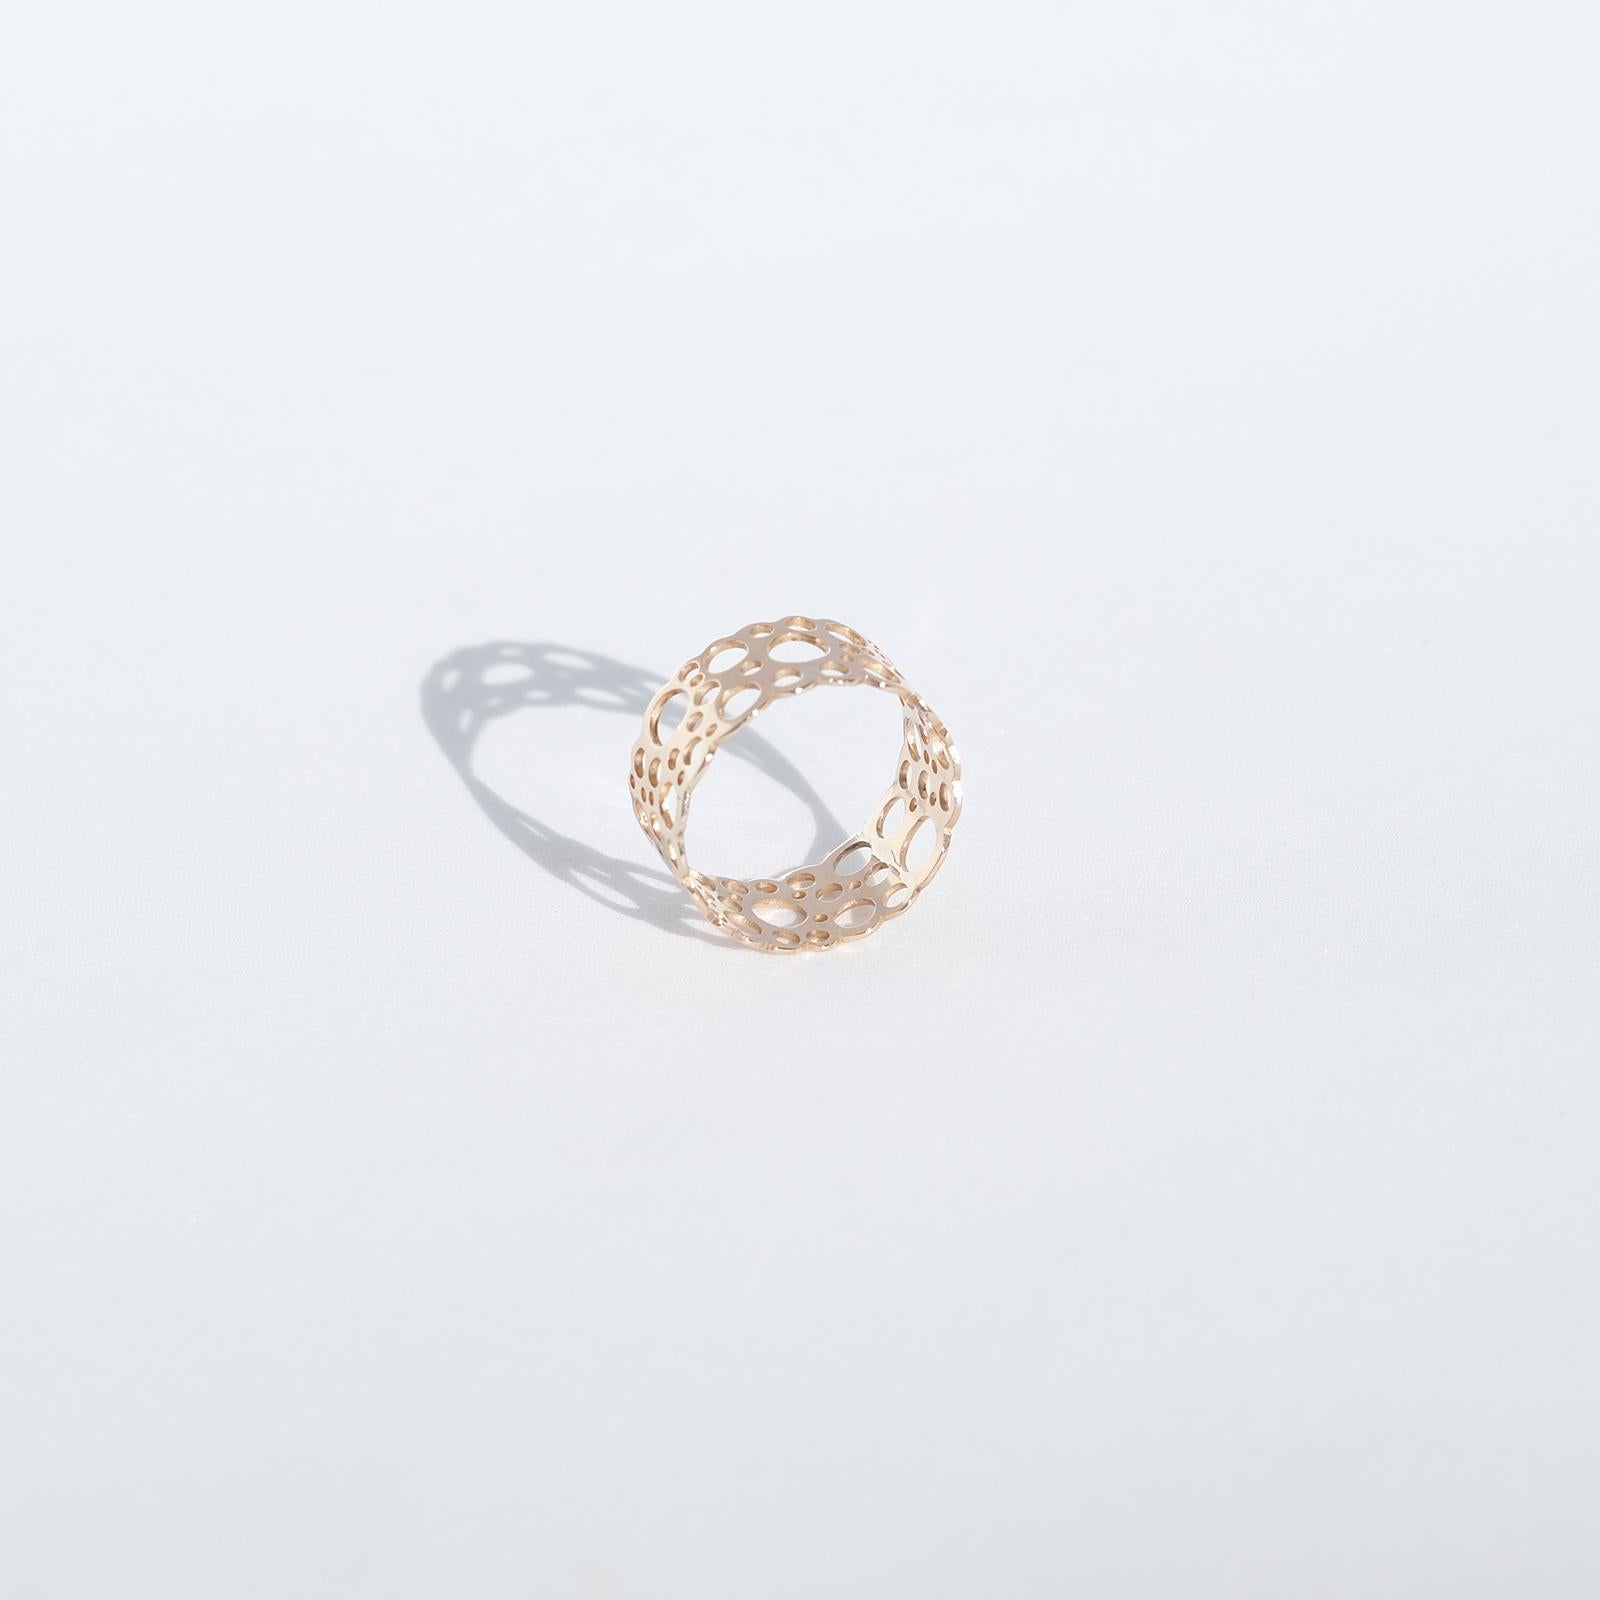 Finnish Gold Ring, Liisa Vitali, 1969